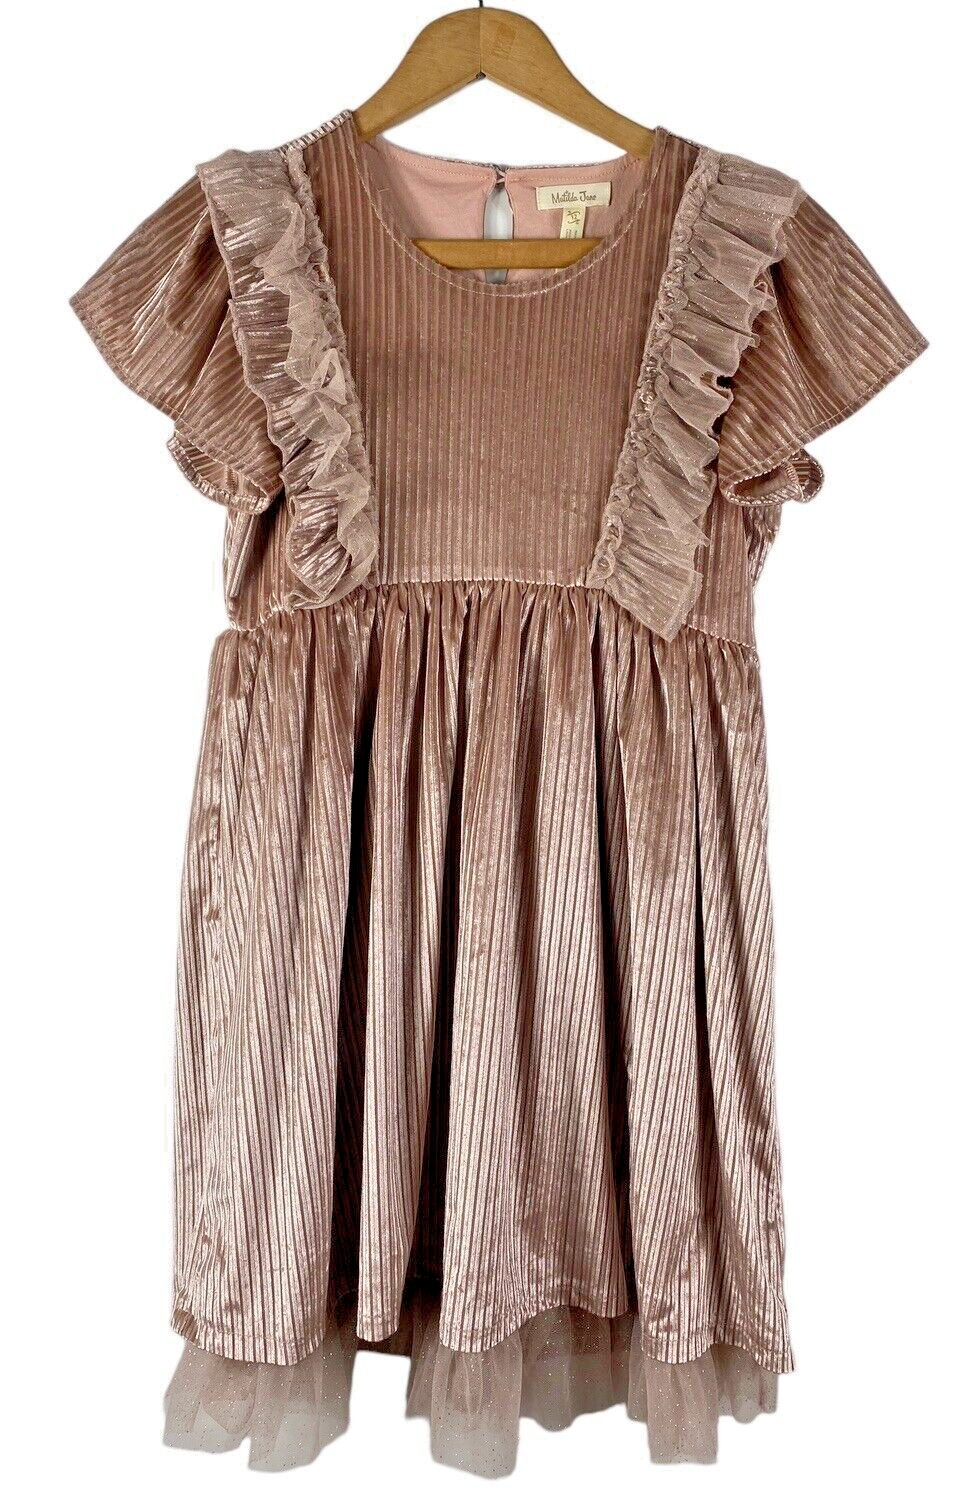 Primary image for Matilda Jane Dress Size 12 Girls Fancy Velvet Ribbed Dusty Rose Pink Tulle Hem